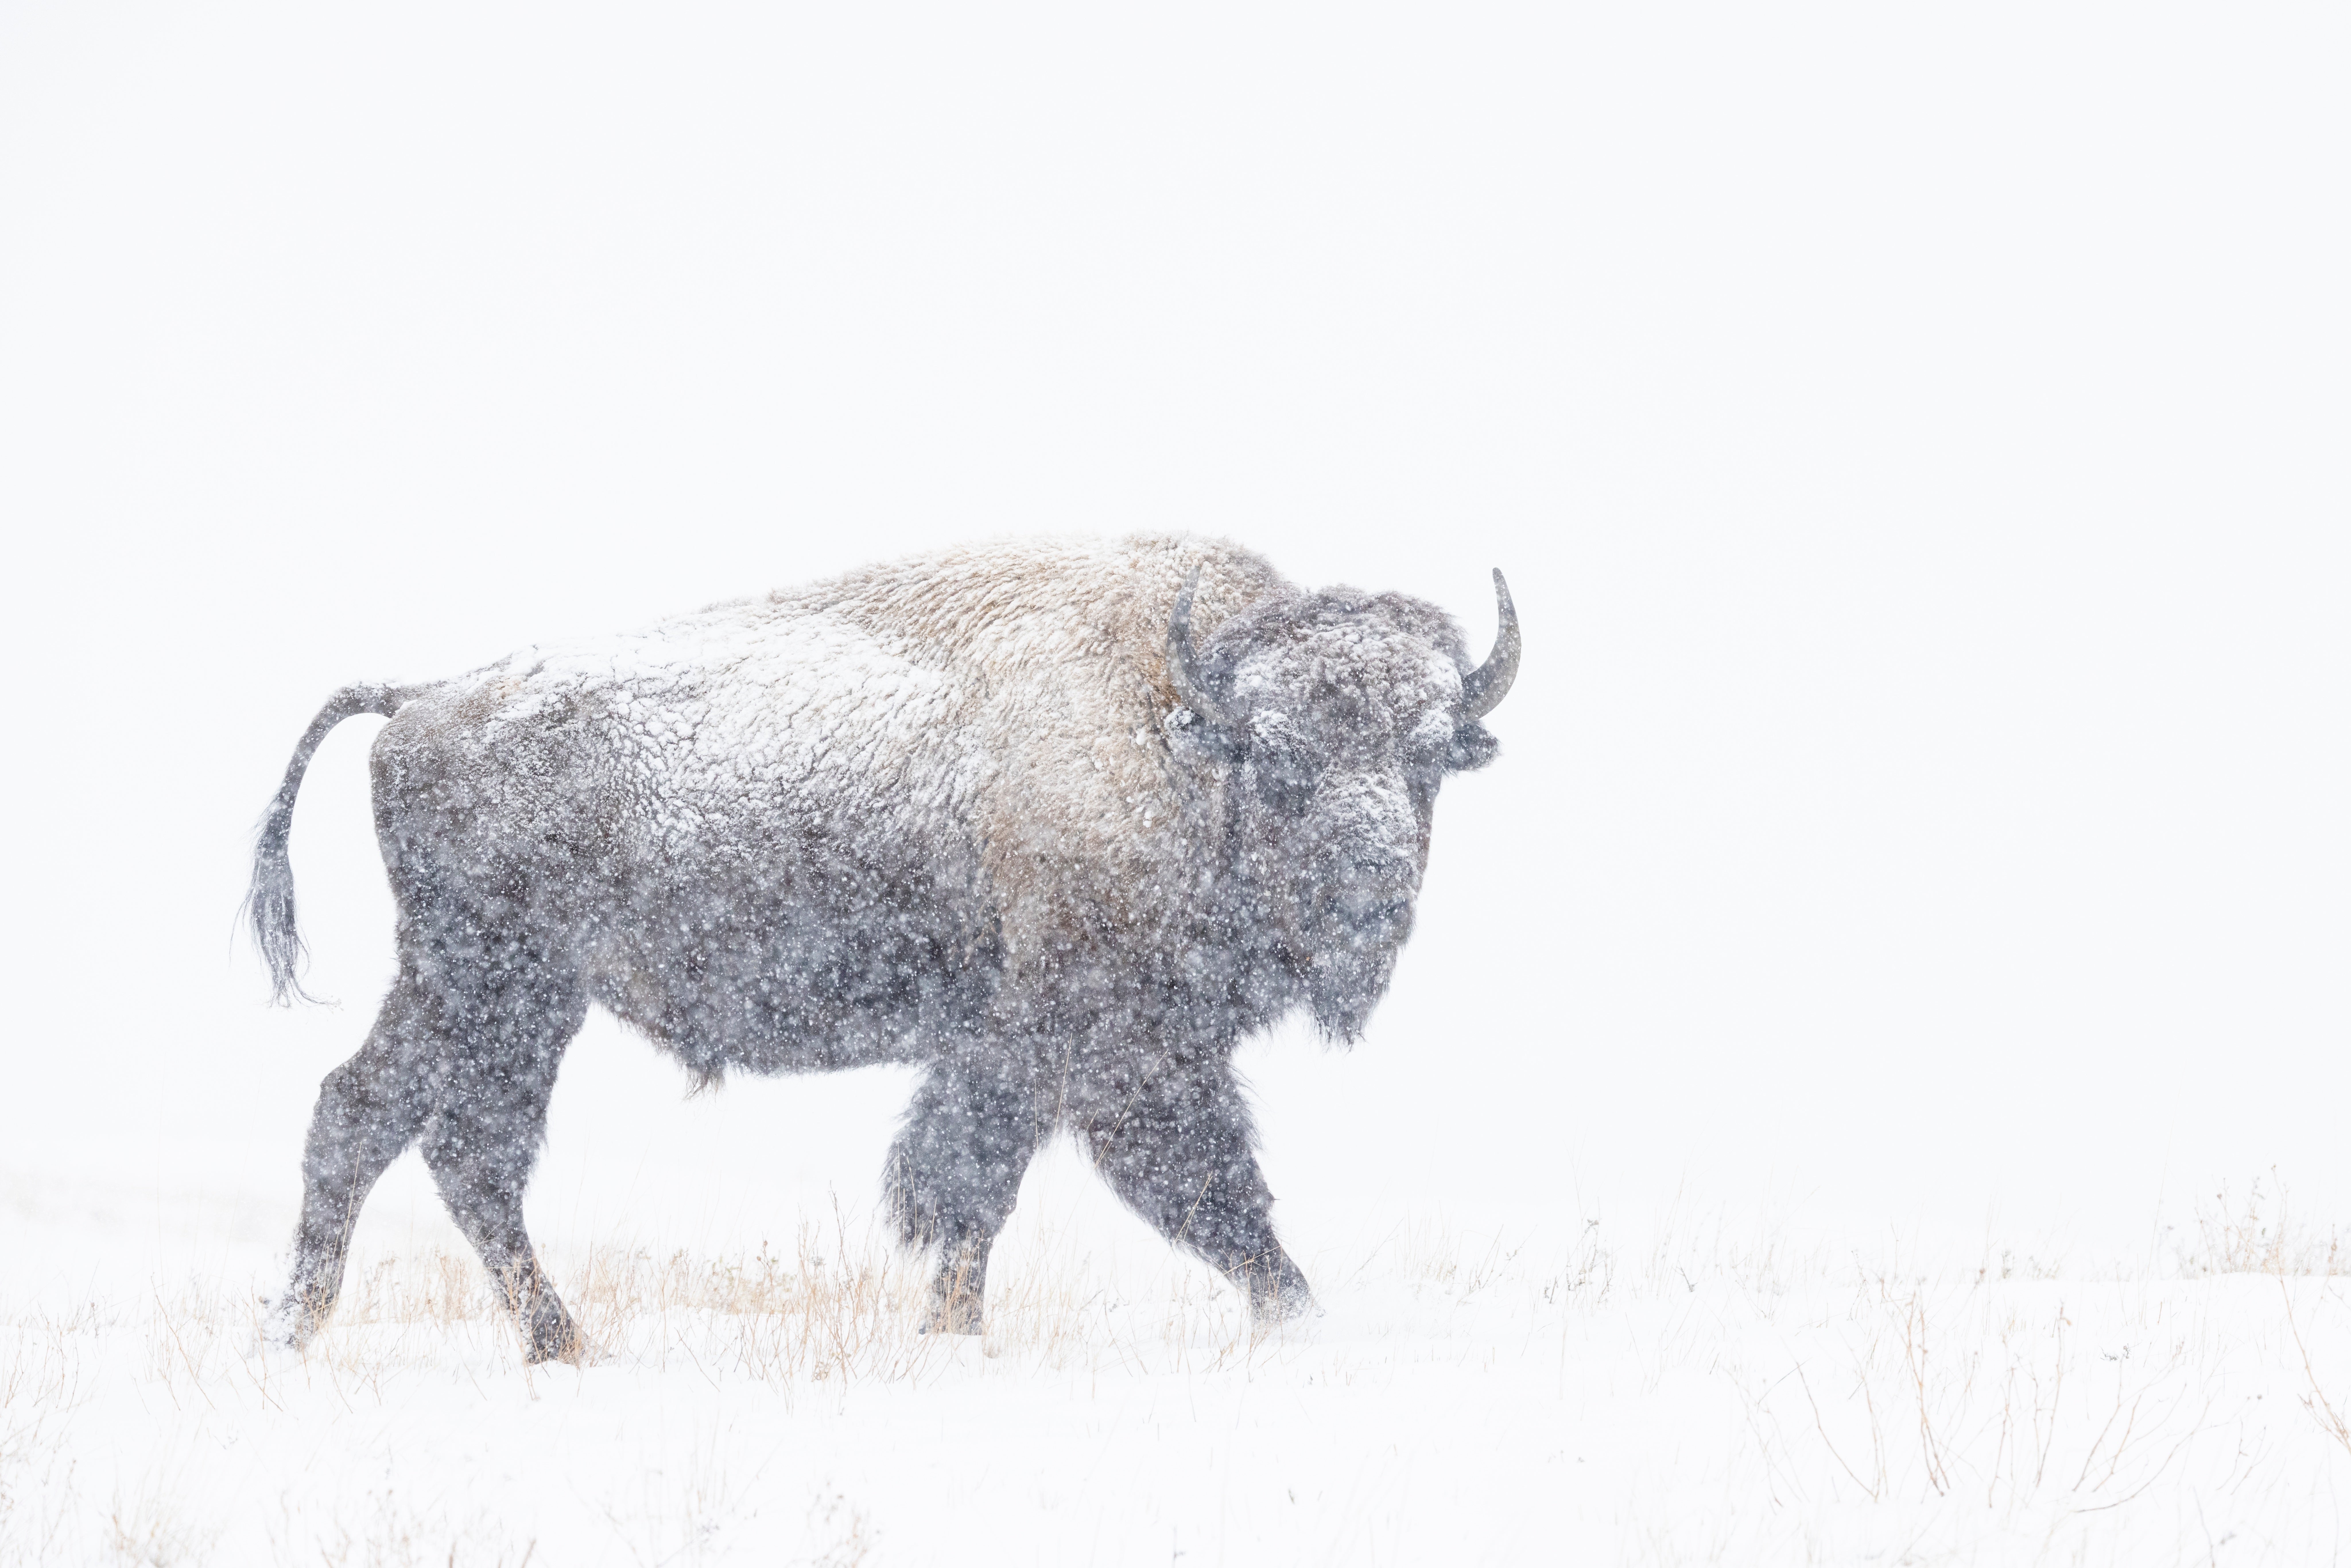 bison walks in a snowstorm